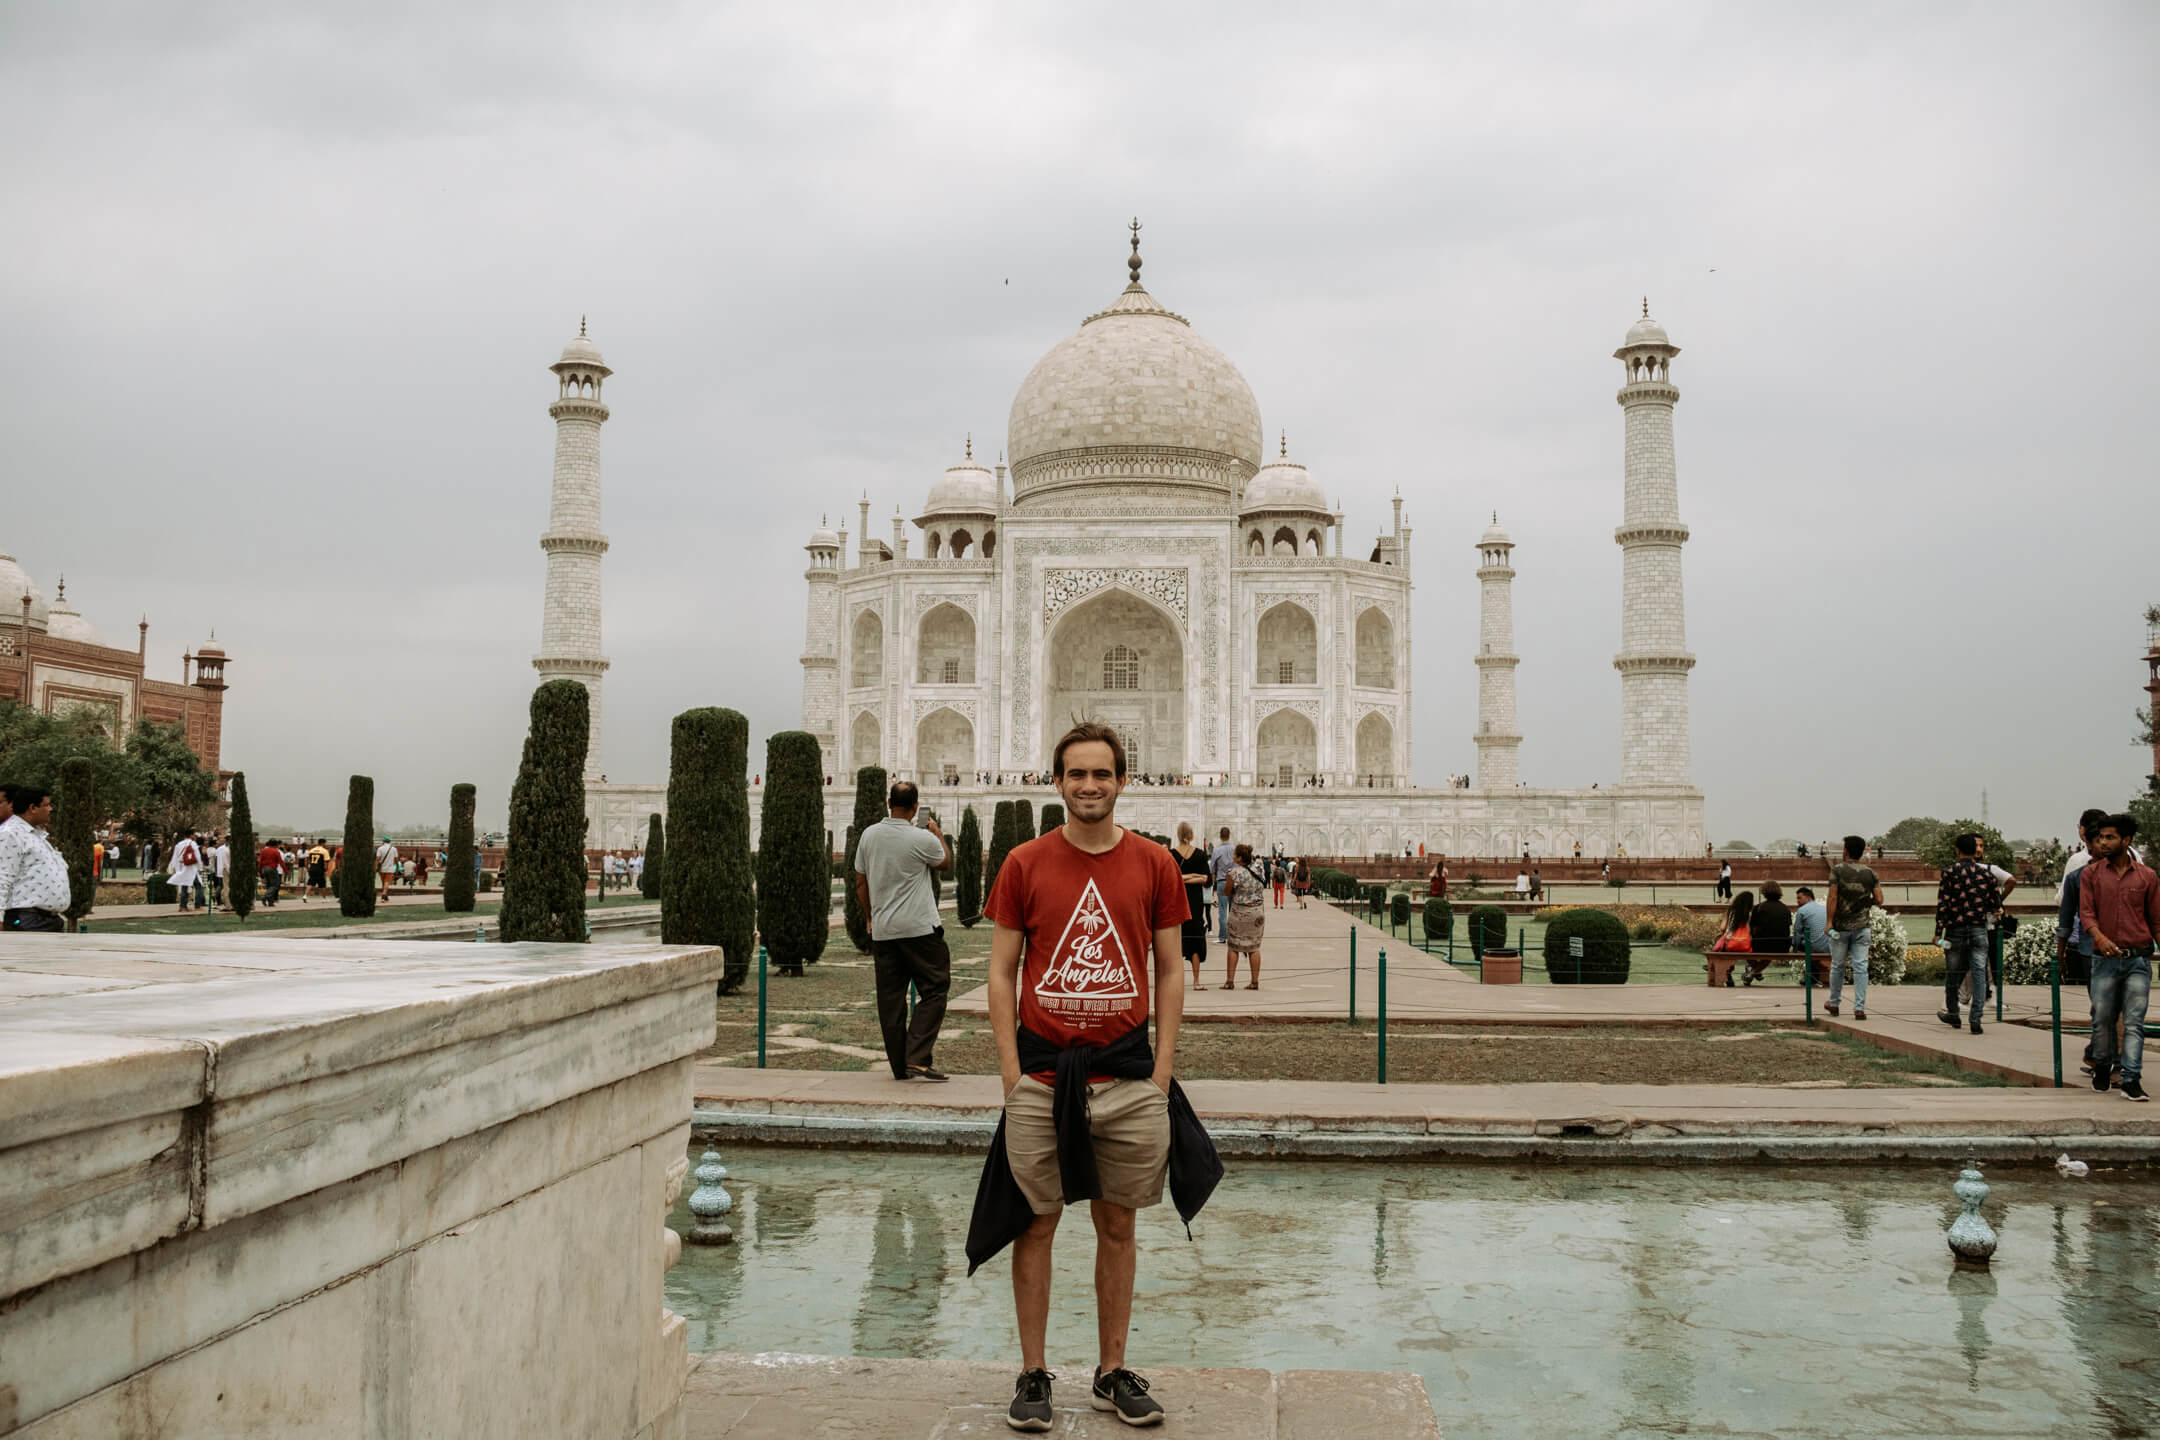 The Taj Mahal fountain in Agra, India